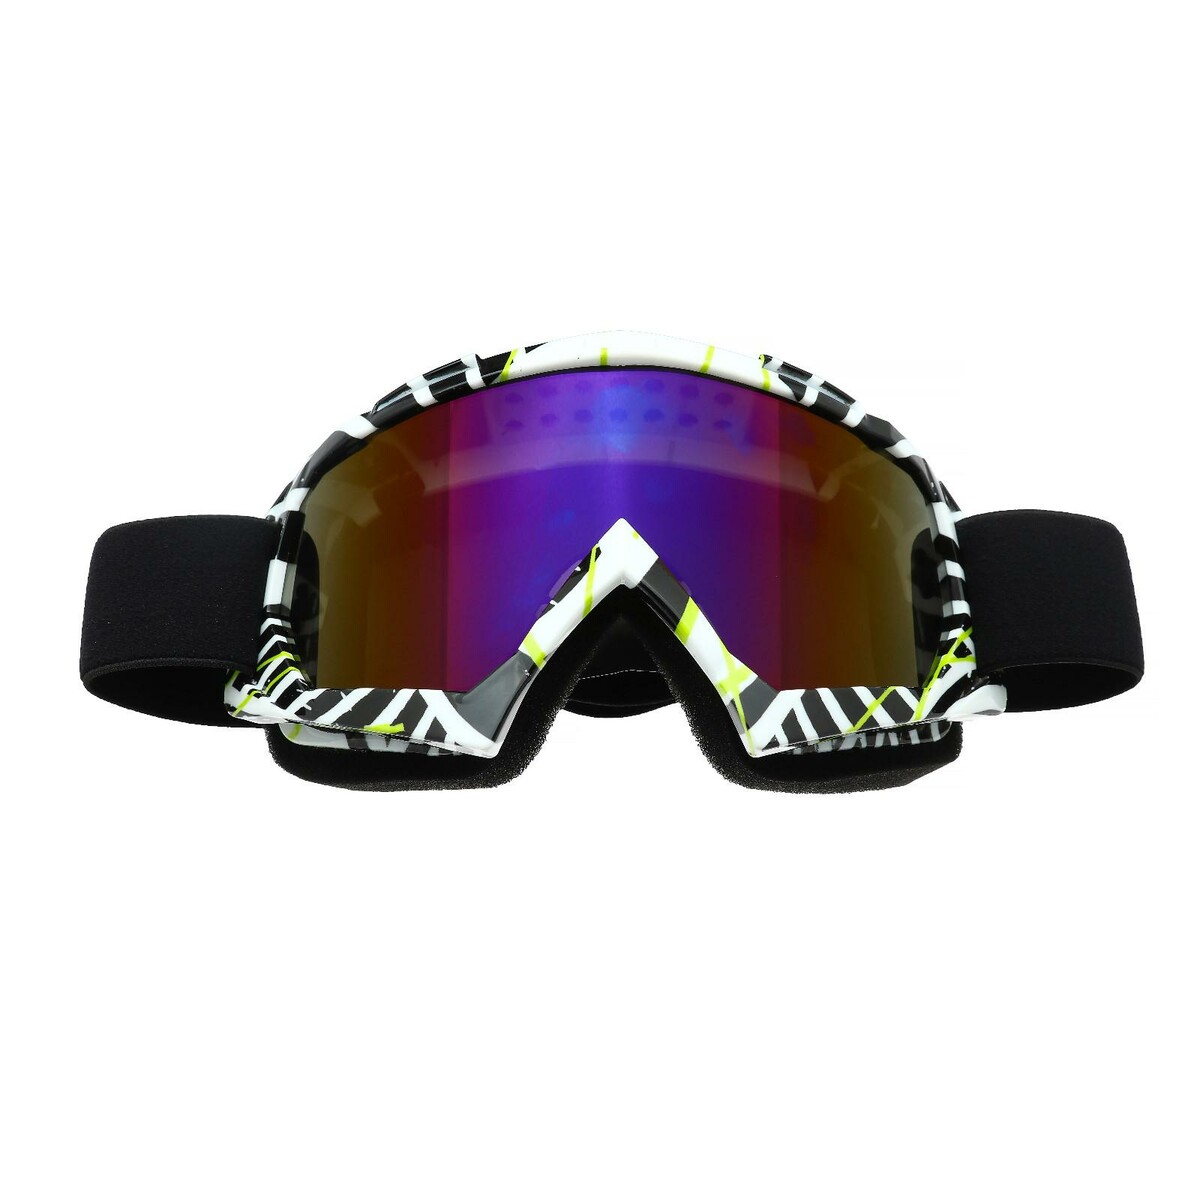 Очки-маска для езды на мототехнике, стекло сине-фиолетовый хамелеон, бело-черные, ом-19 очки маска со съемной защитой носа стекло прозрачное черные